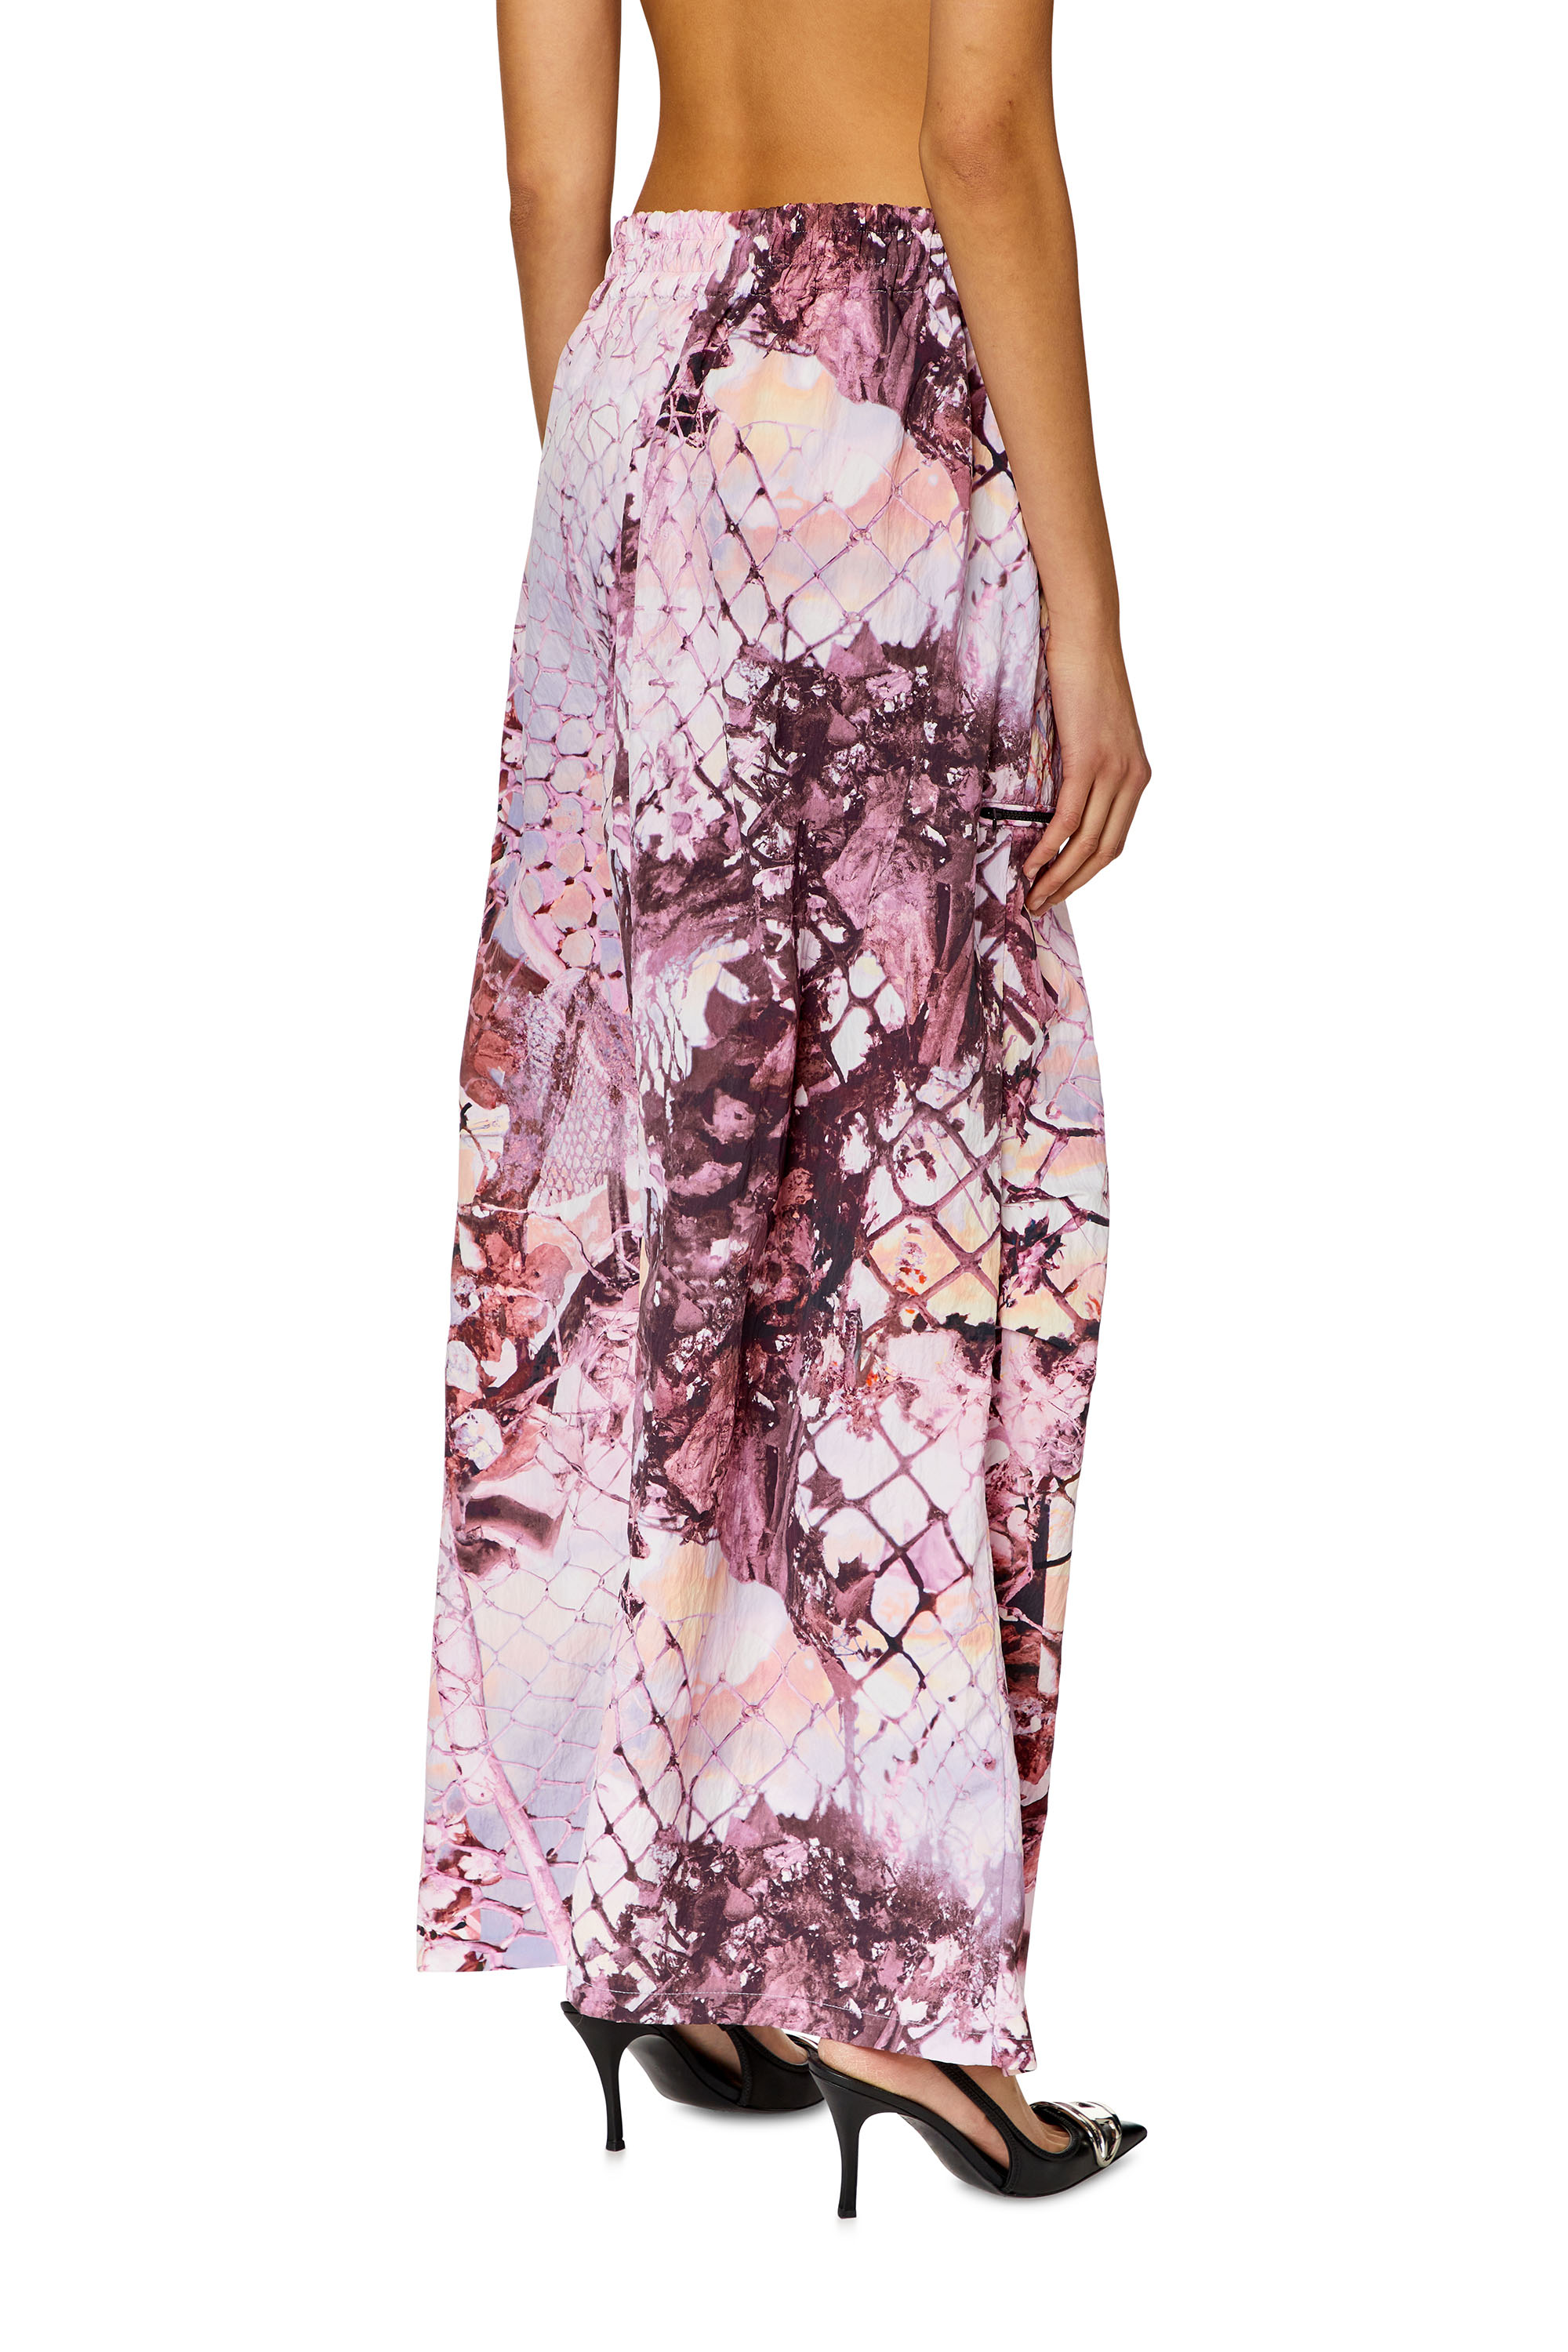 Diesel - O-DIAMY-N1, Woman Long skirt in printed crinkled nylon in Violet - Image 4